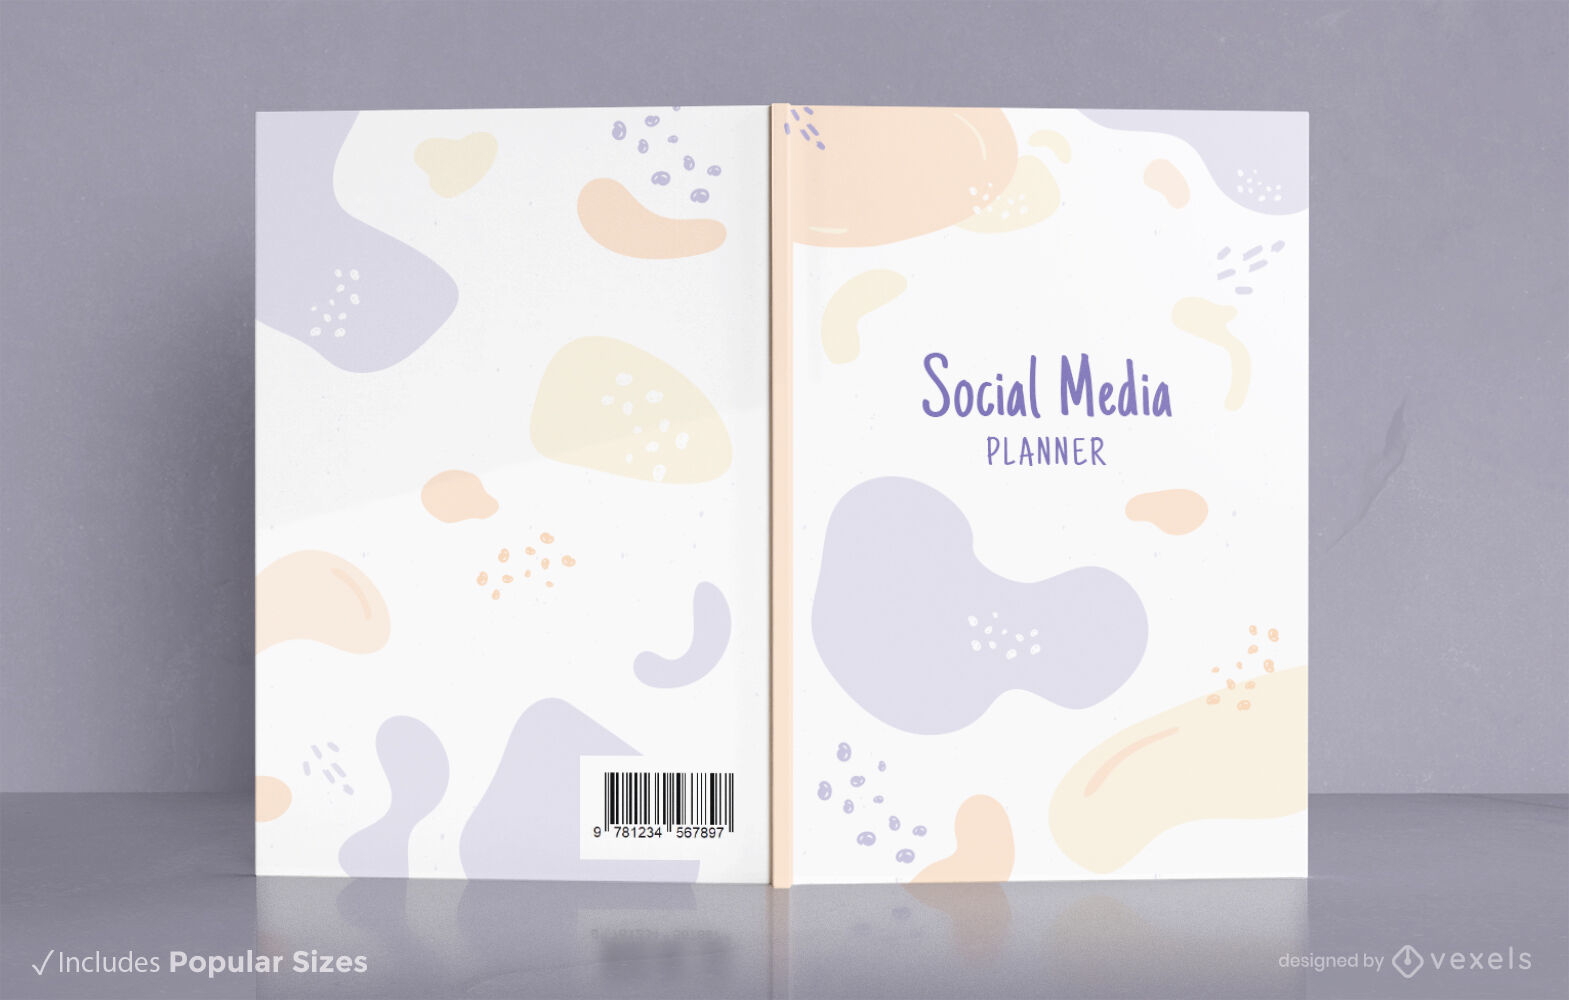 Design abstrato da capa do livro nas redes sociais